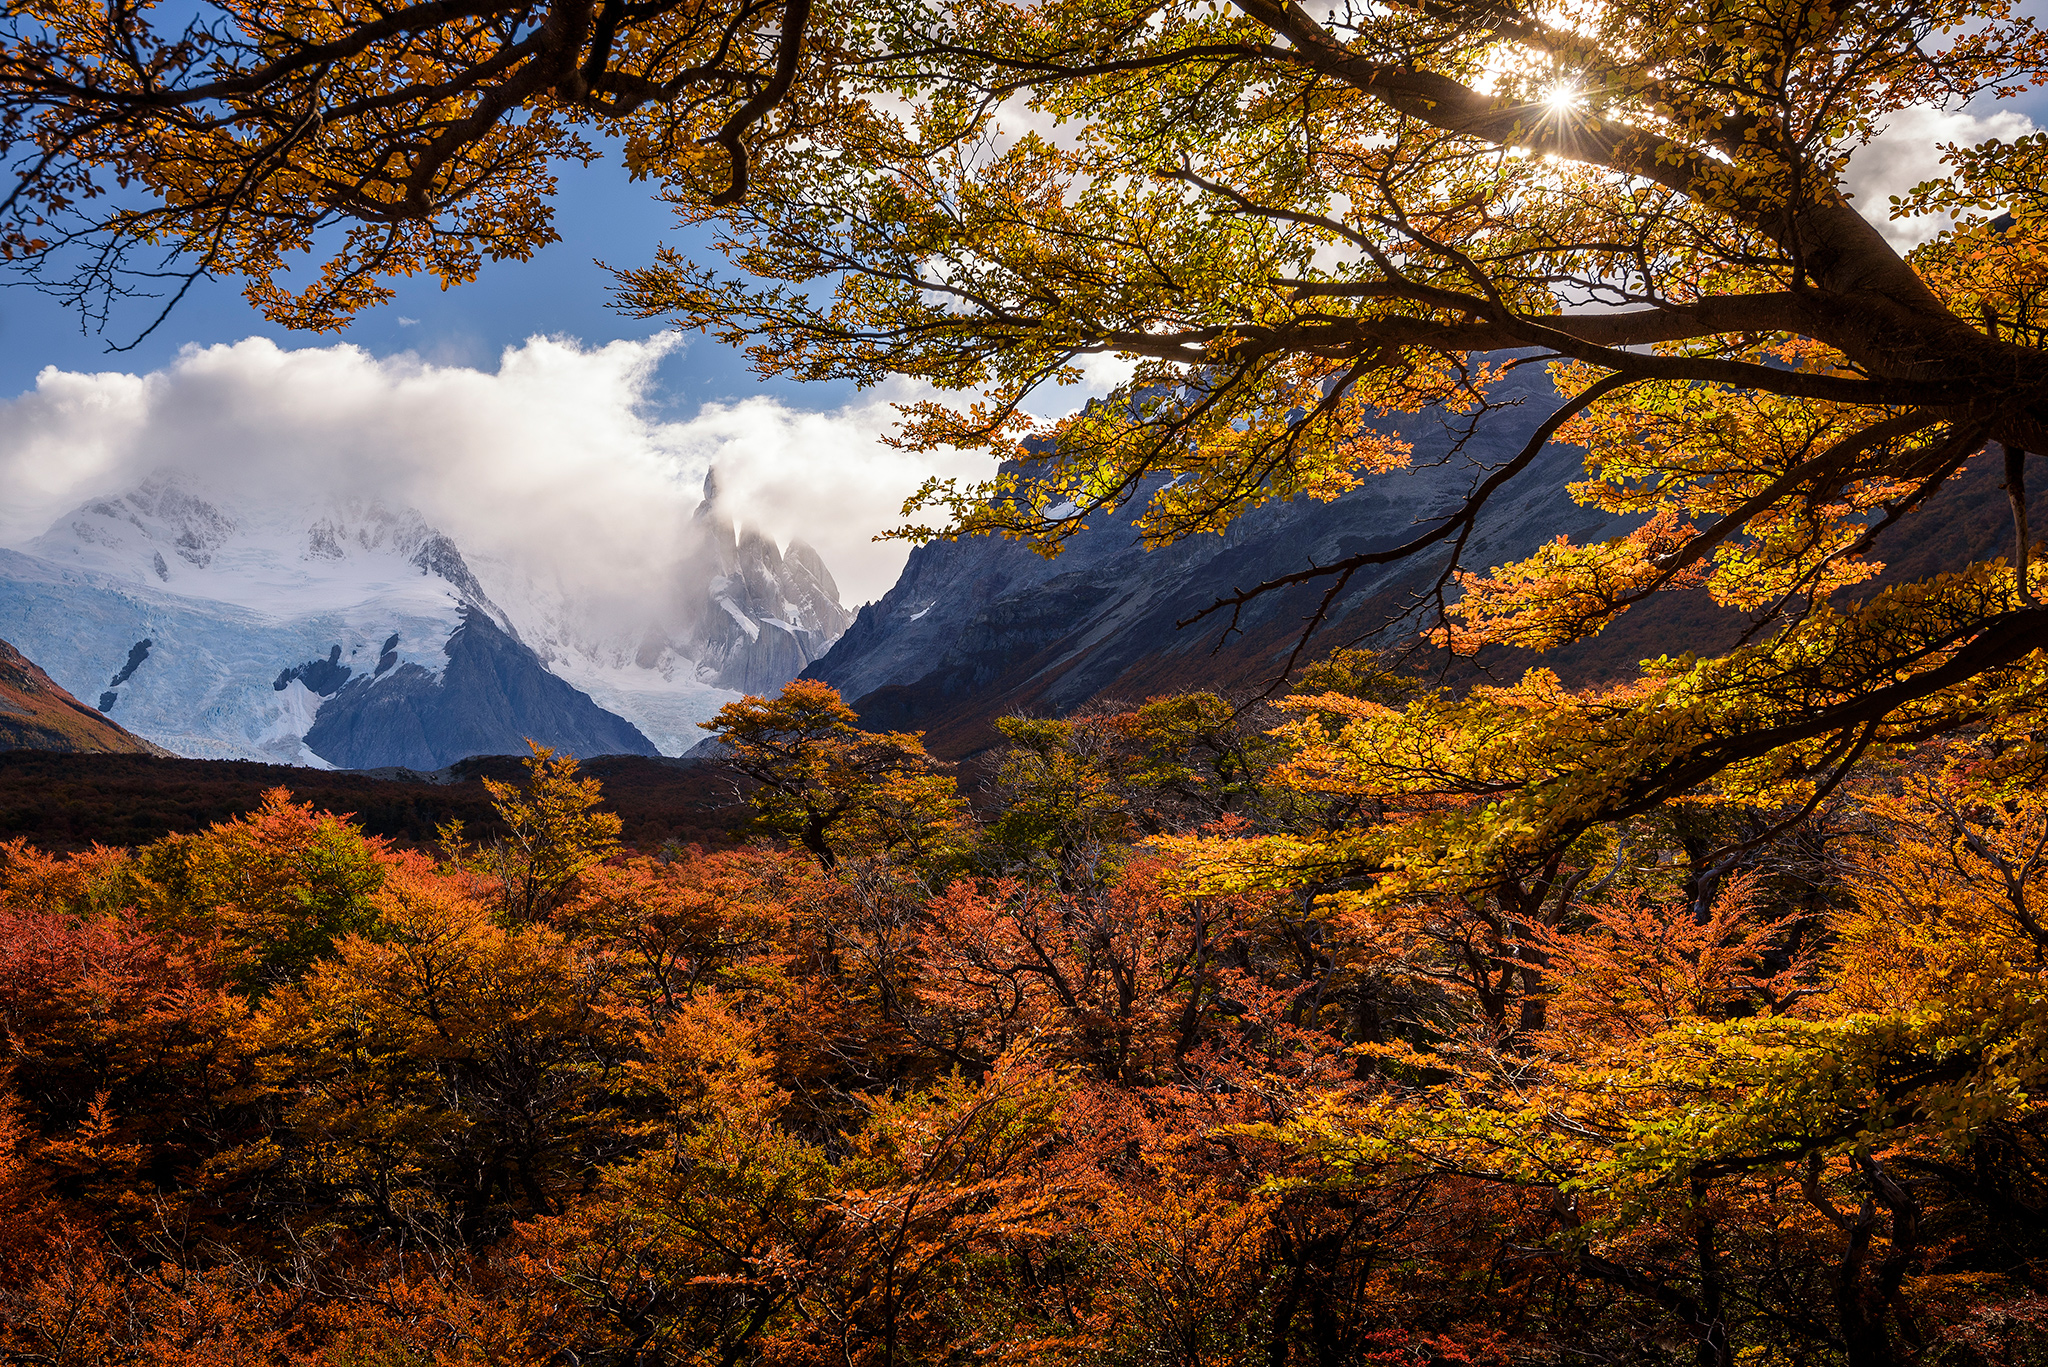 Patagonia autumn scenery